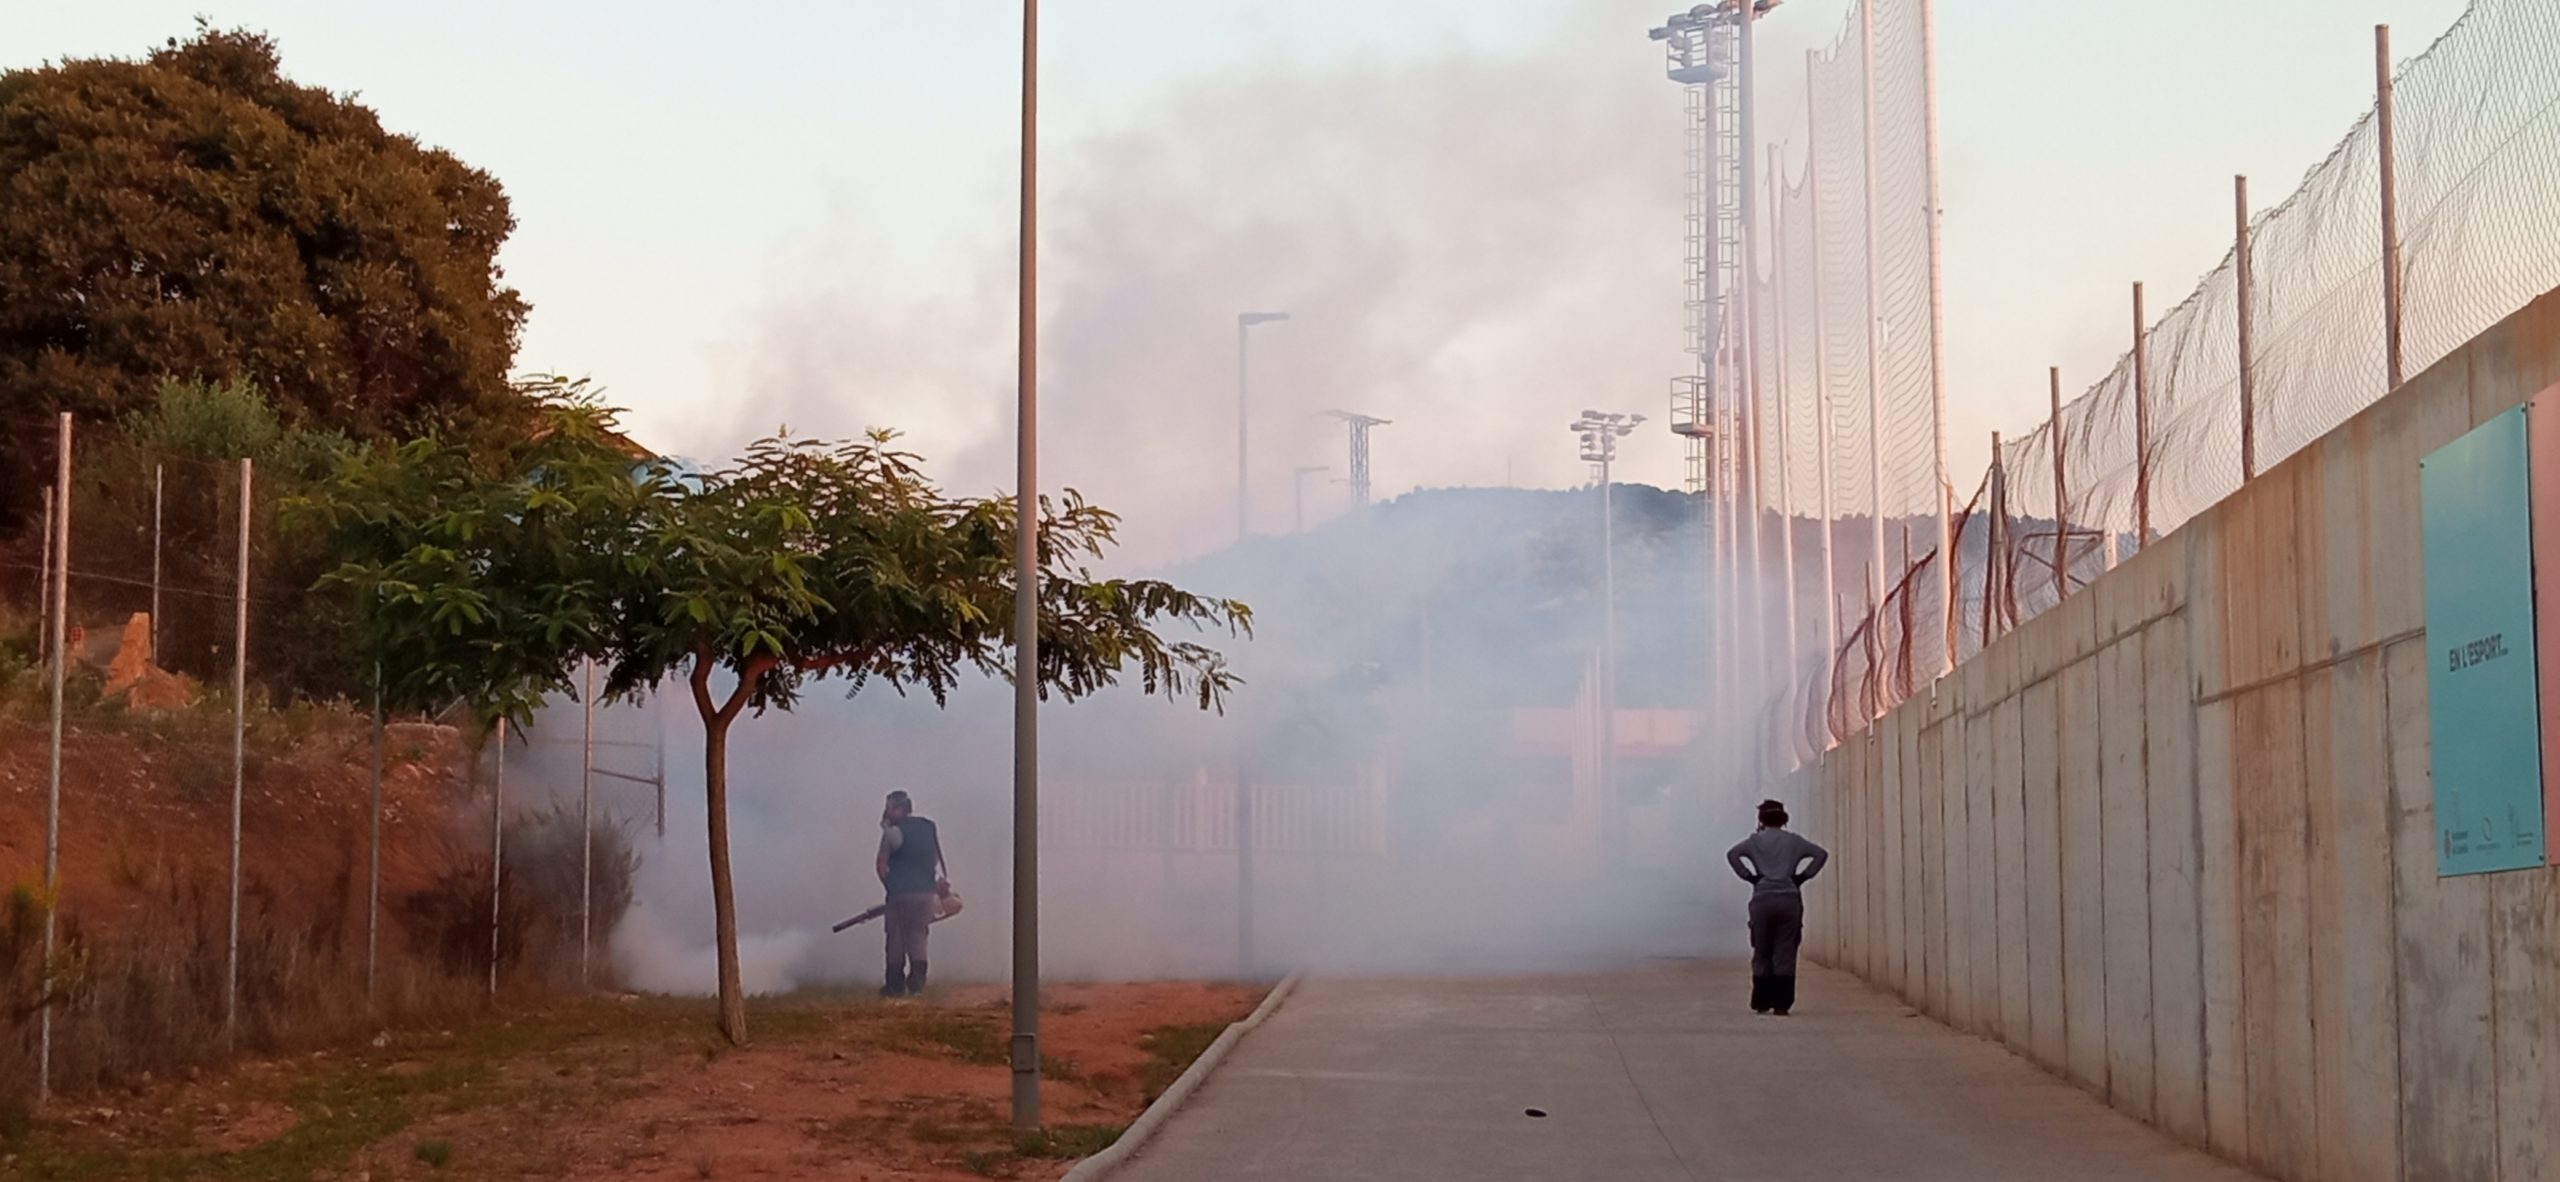 El Patronato de Deportes realiza fumigaciones contra mosquitos en instalaciones municipales